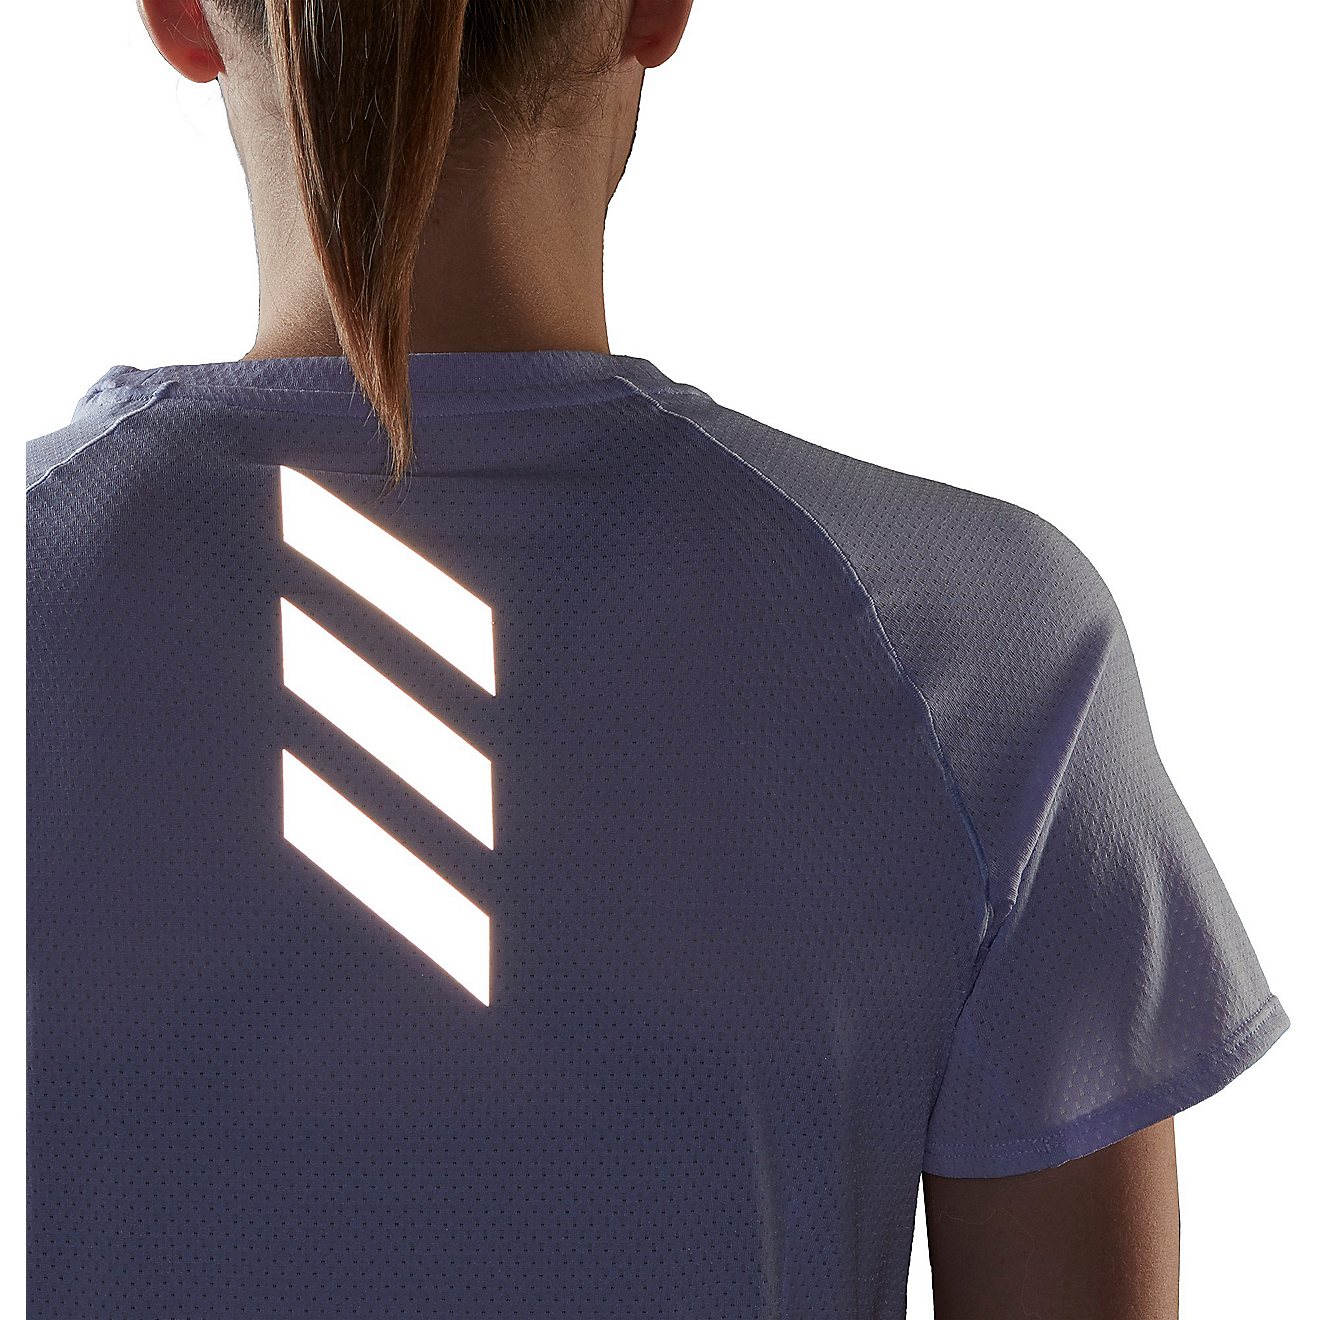 adidas Women's Runner Short Sleeve T-shirt                                                                                       - view number 3